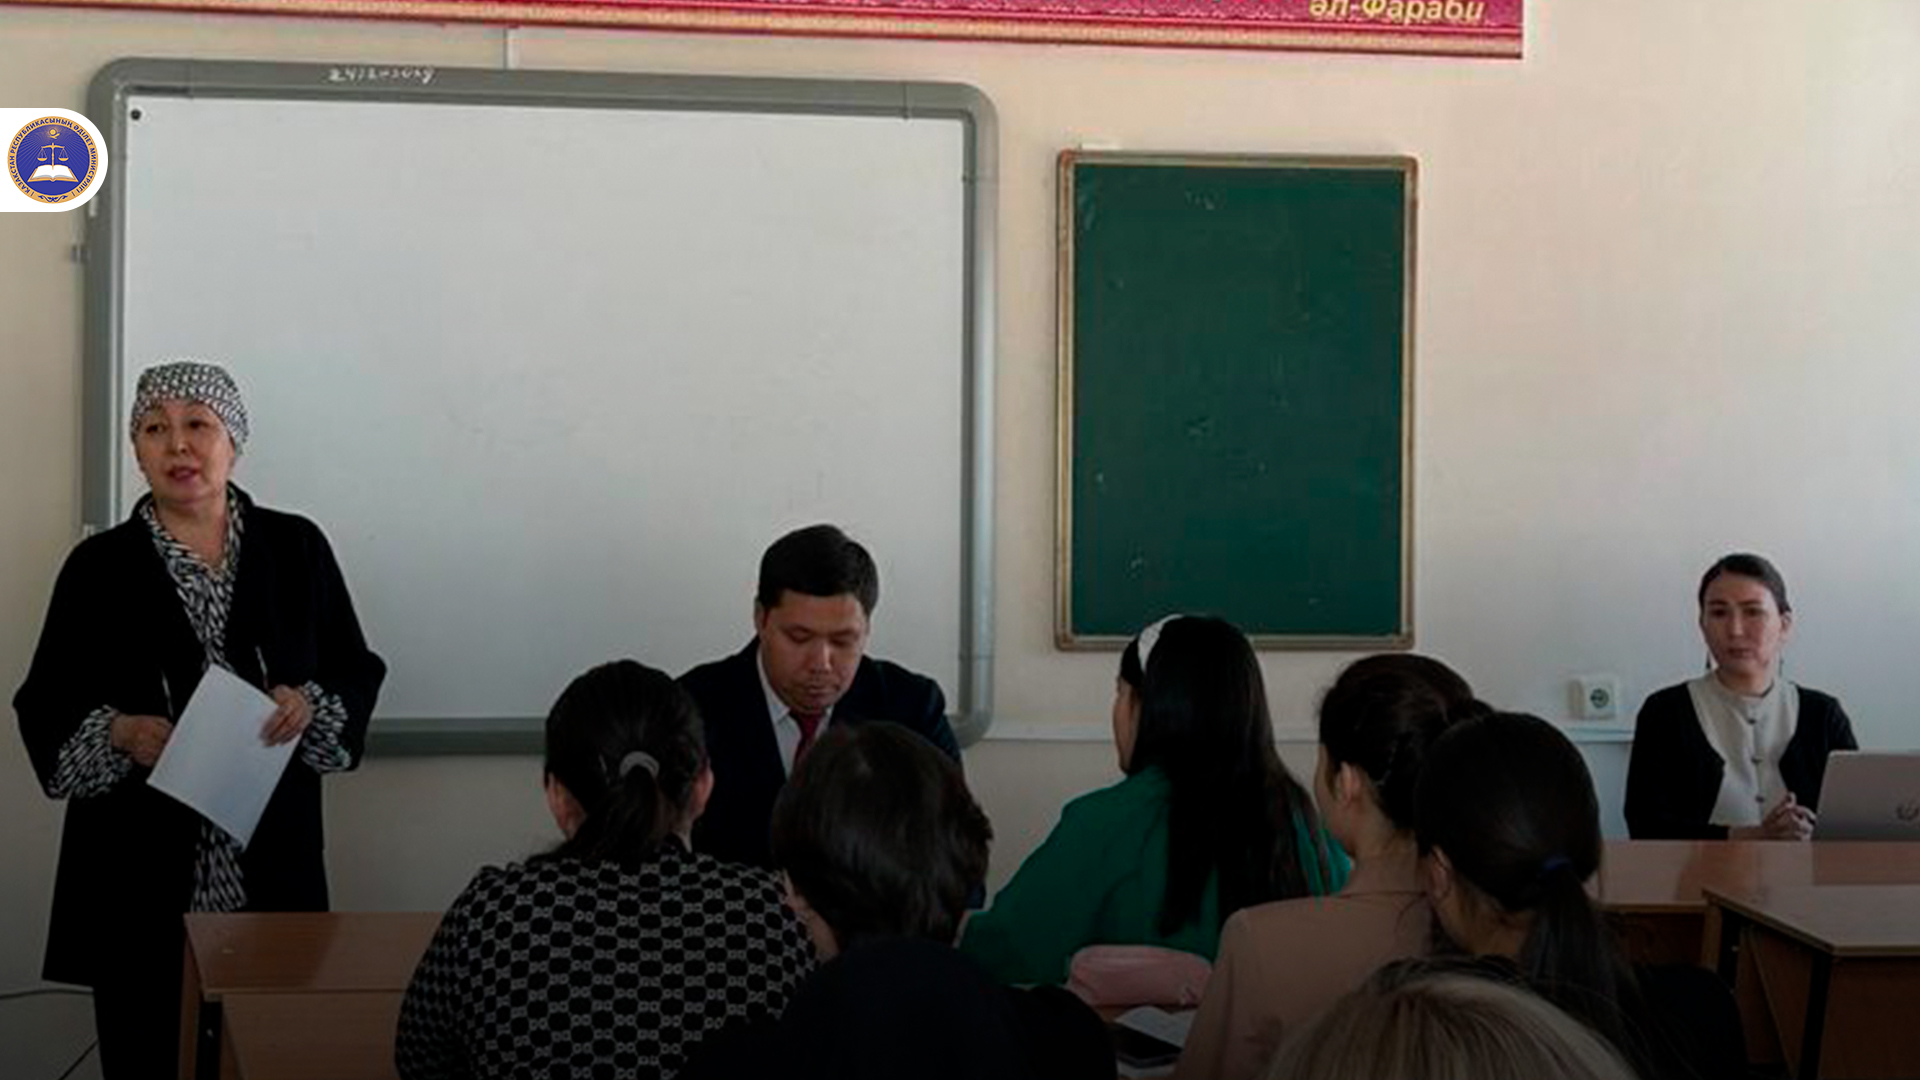 14 марта прошла встреча работников Департамента юстиции города Алматы со студентами 2 курса юридического факультета КазНПУ им. Абая.